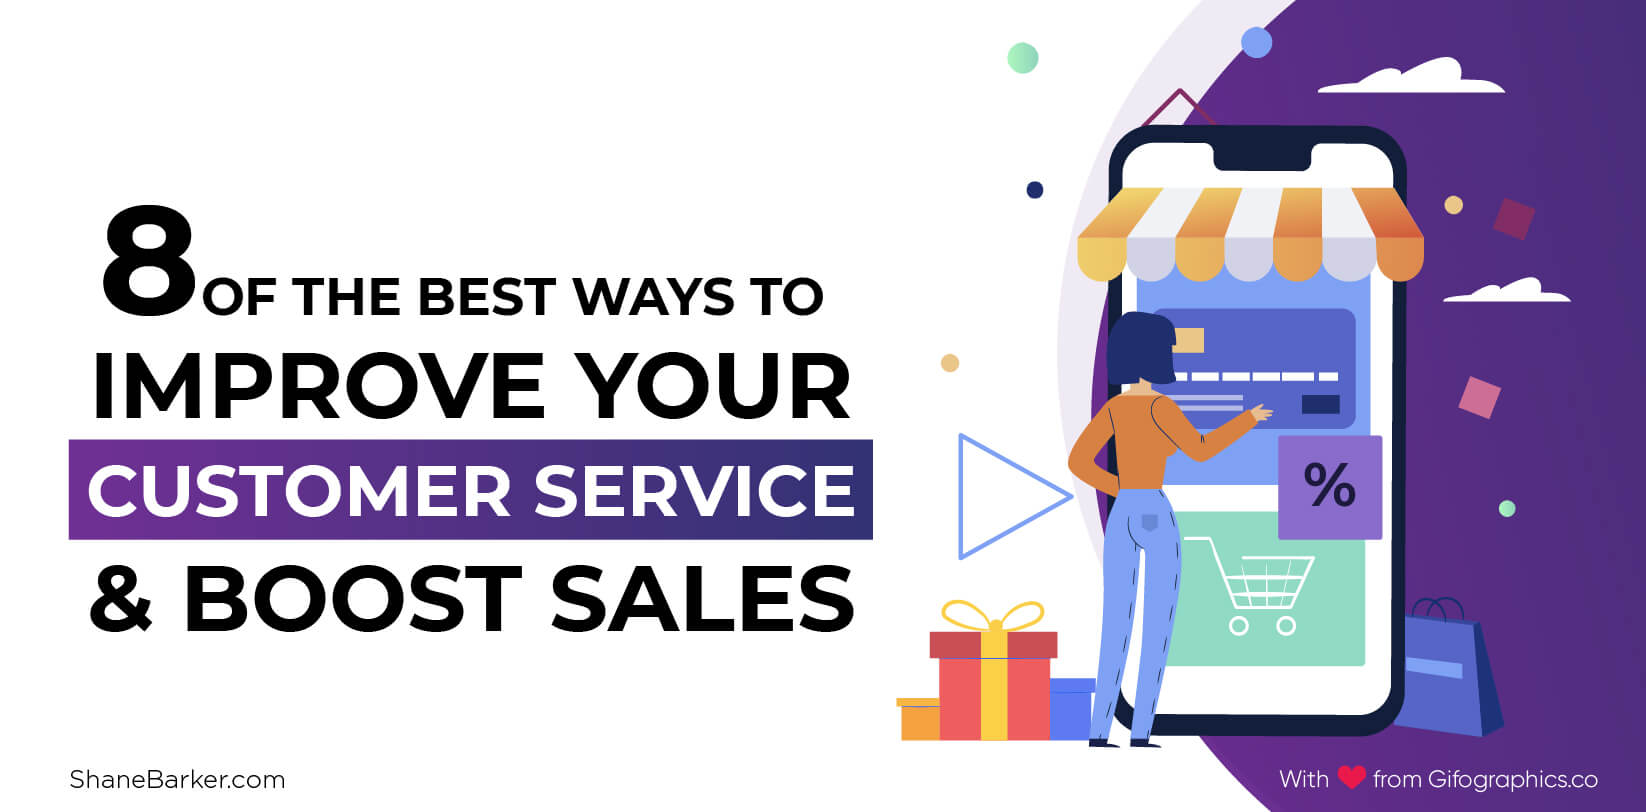 고객 서비스를 개선하고 판매를 늘리는 가장 좋은 방법 8 가지 (2019 년 9 월 업데이트 됨)